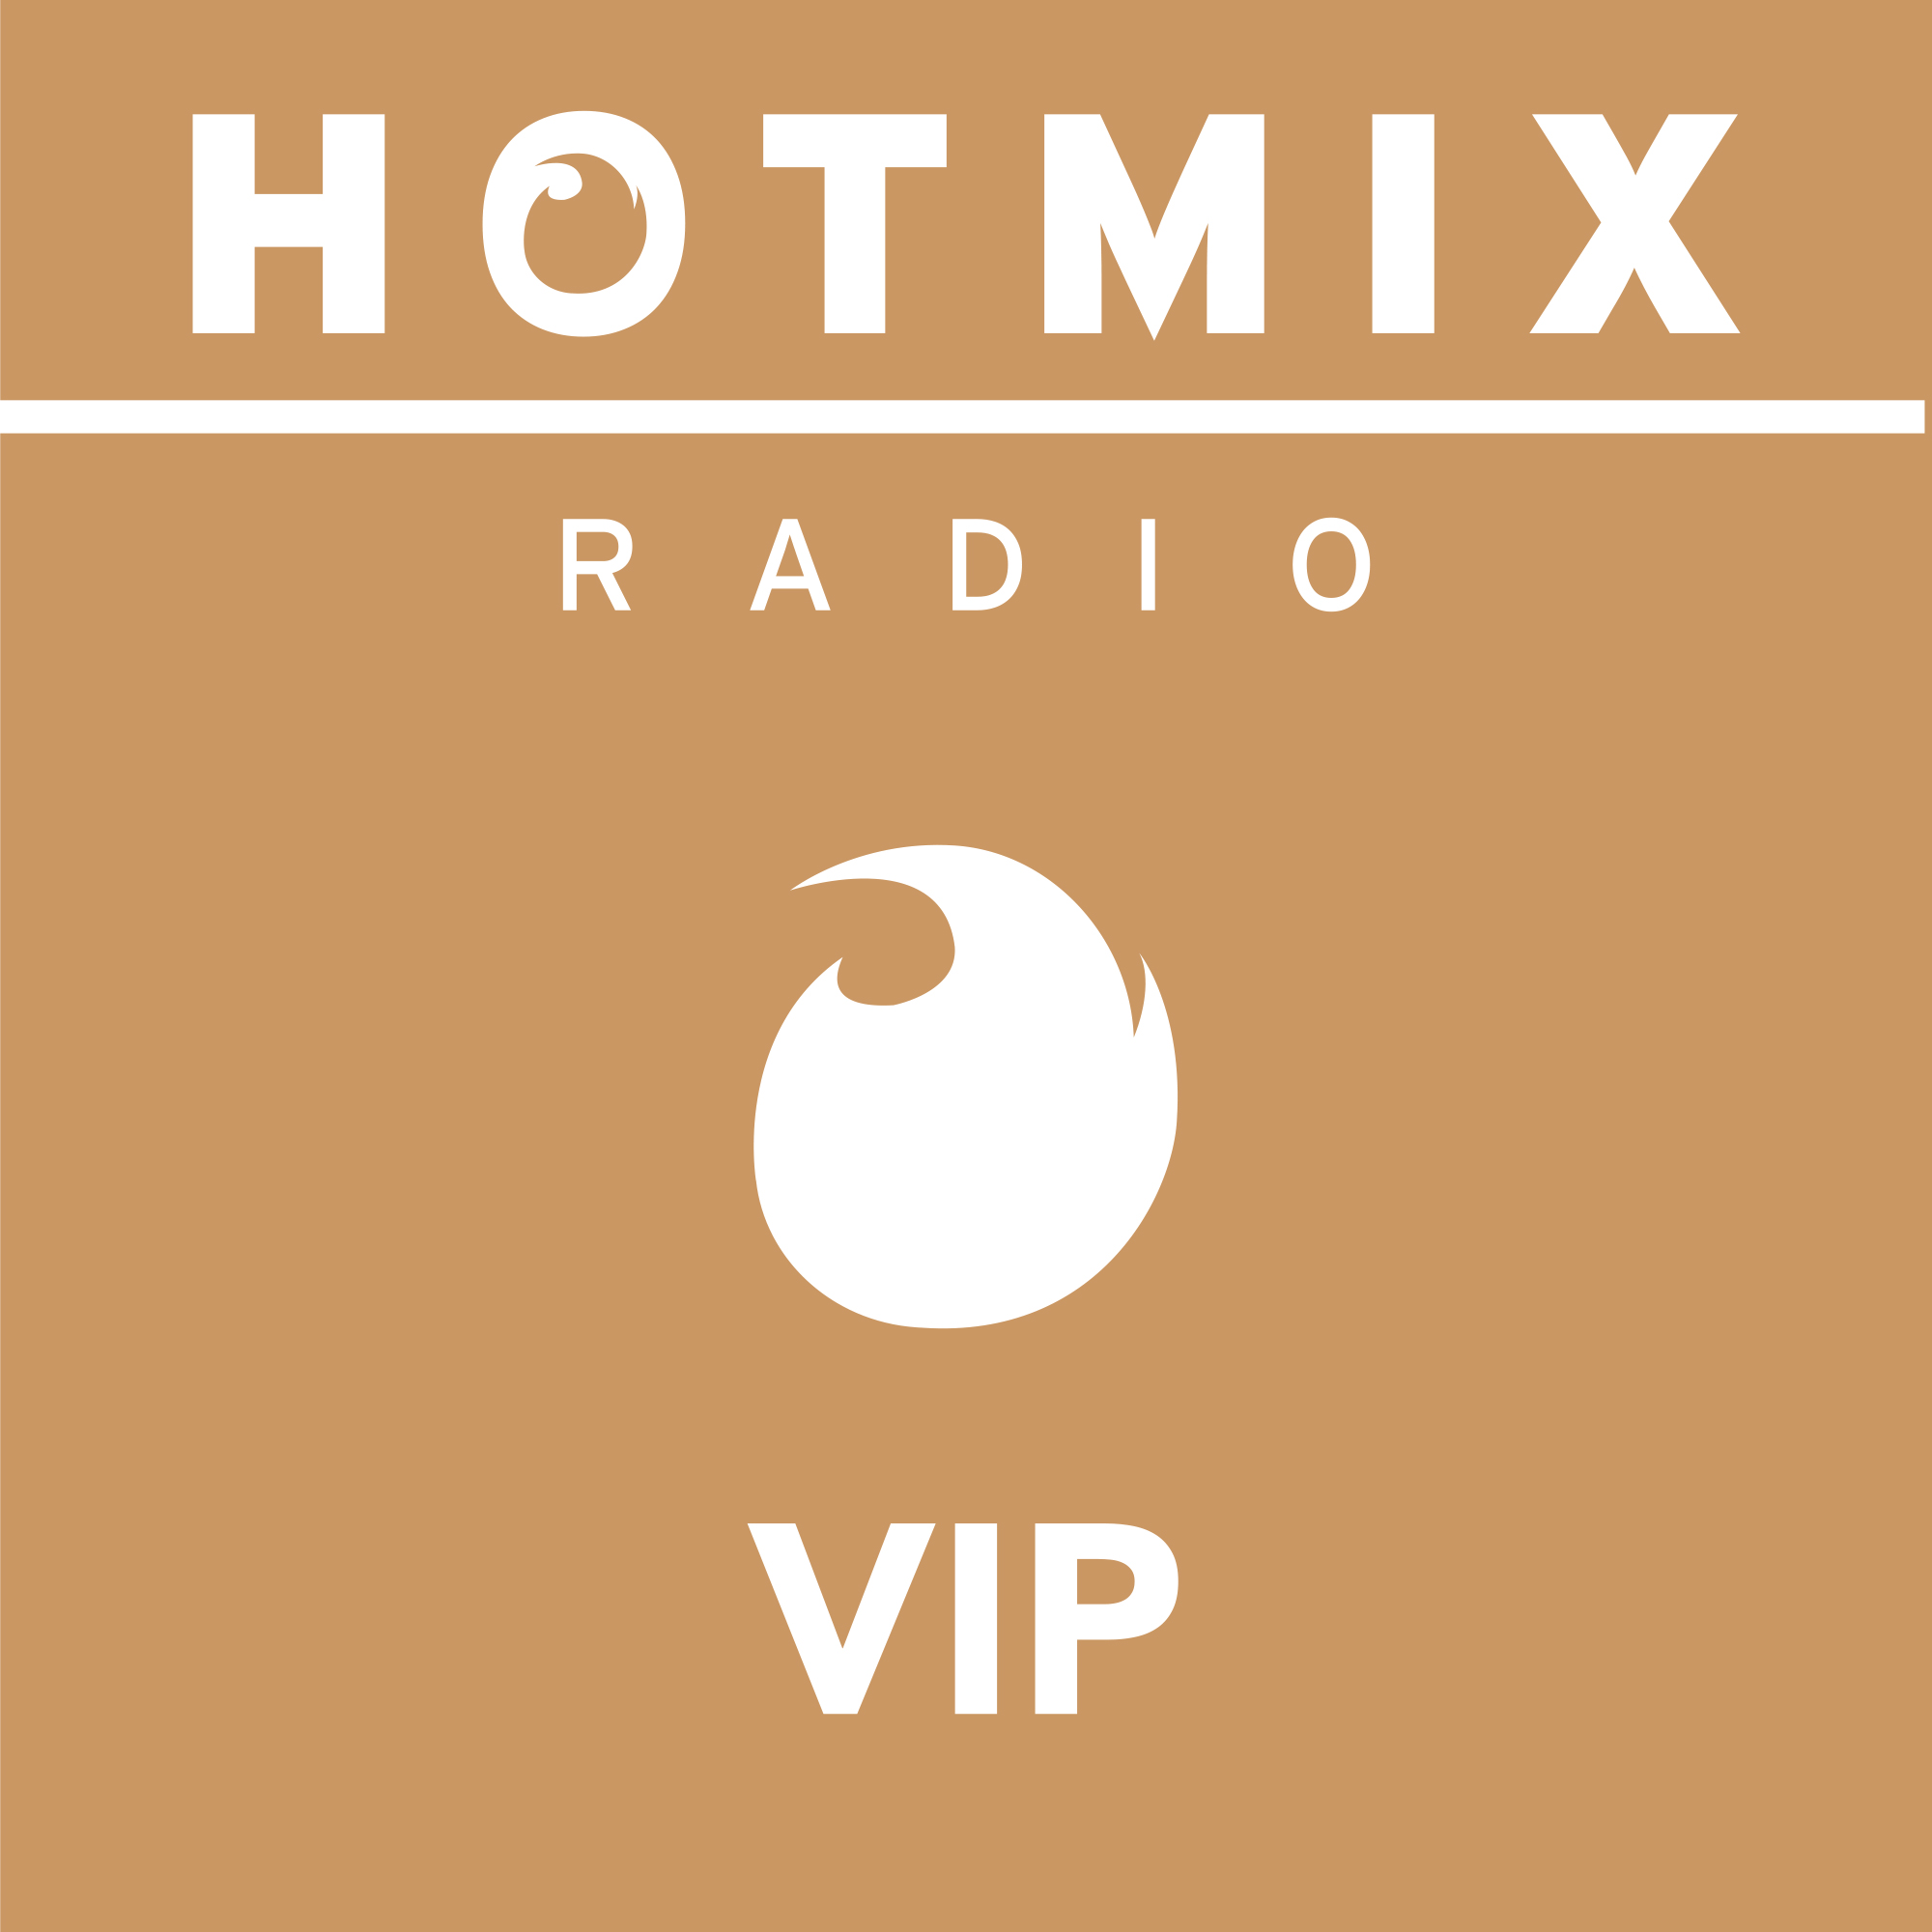 Hotmixradio VIP